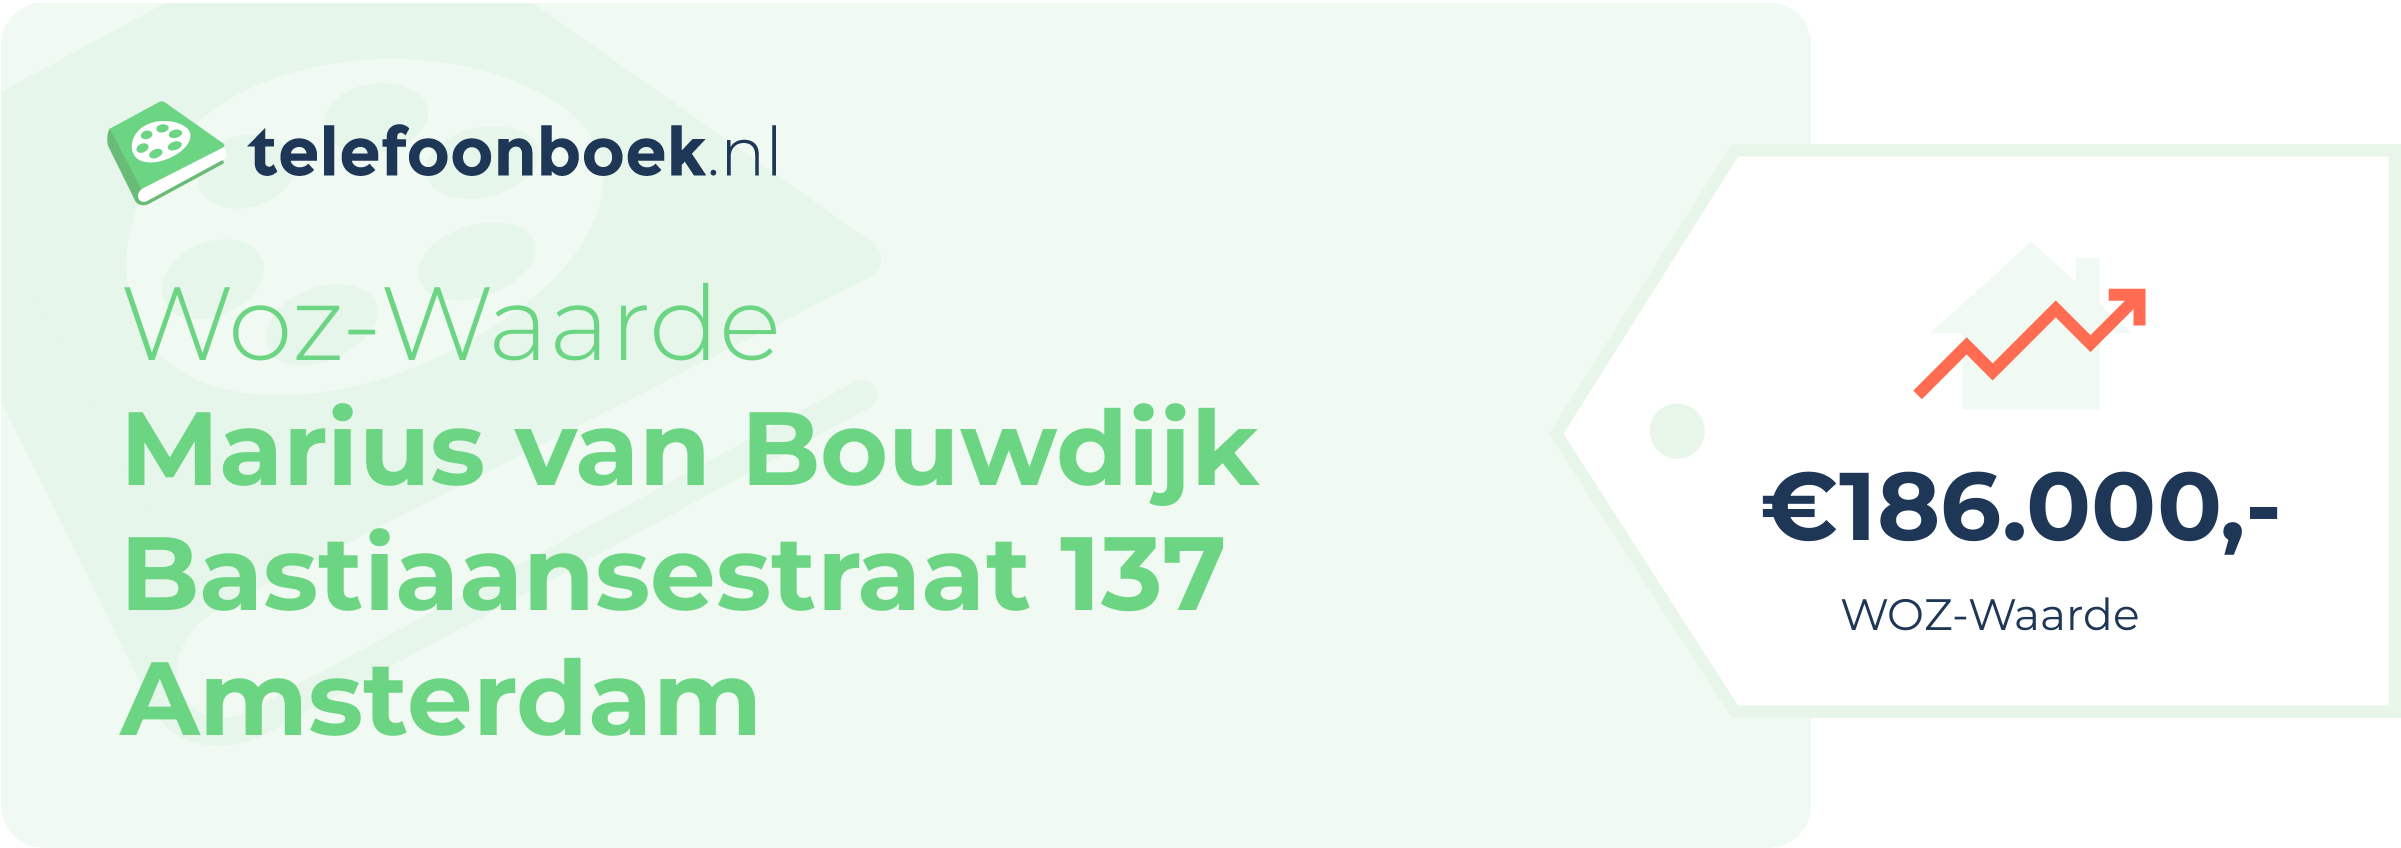 WOZ-waarde Marius Van Bouwdijk Bastiaansestraat 137 Amsterdam